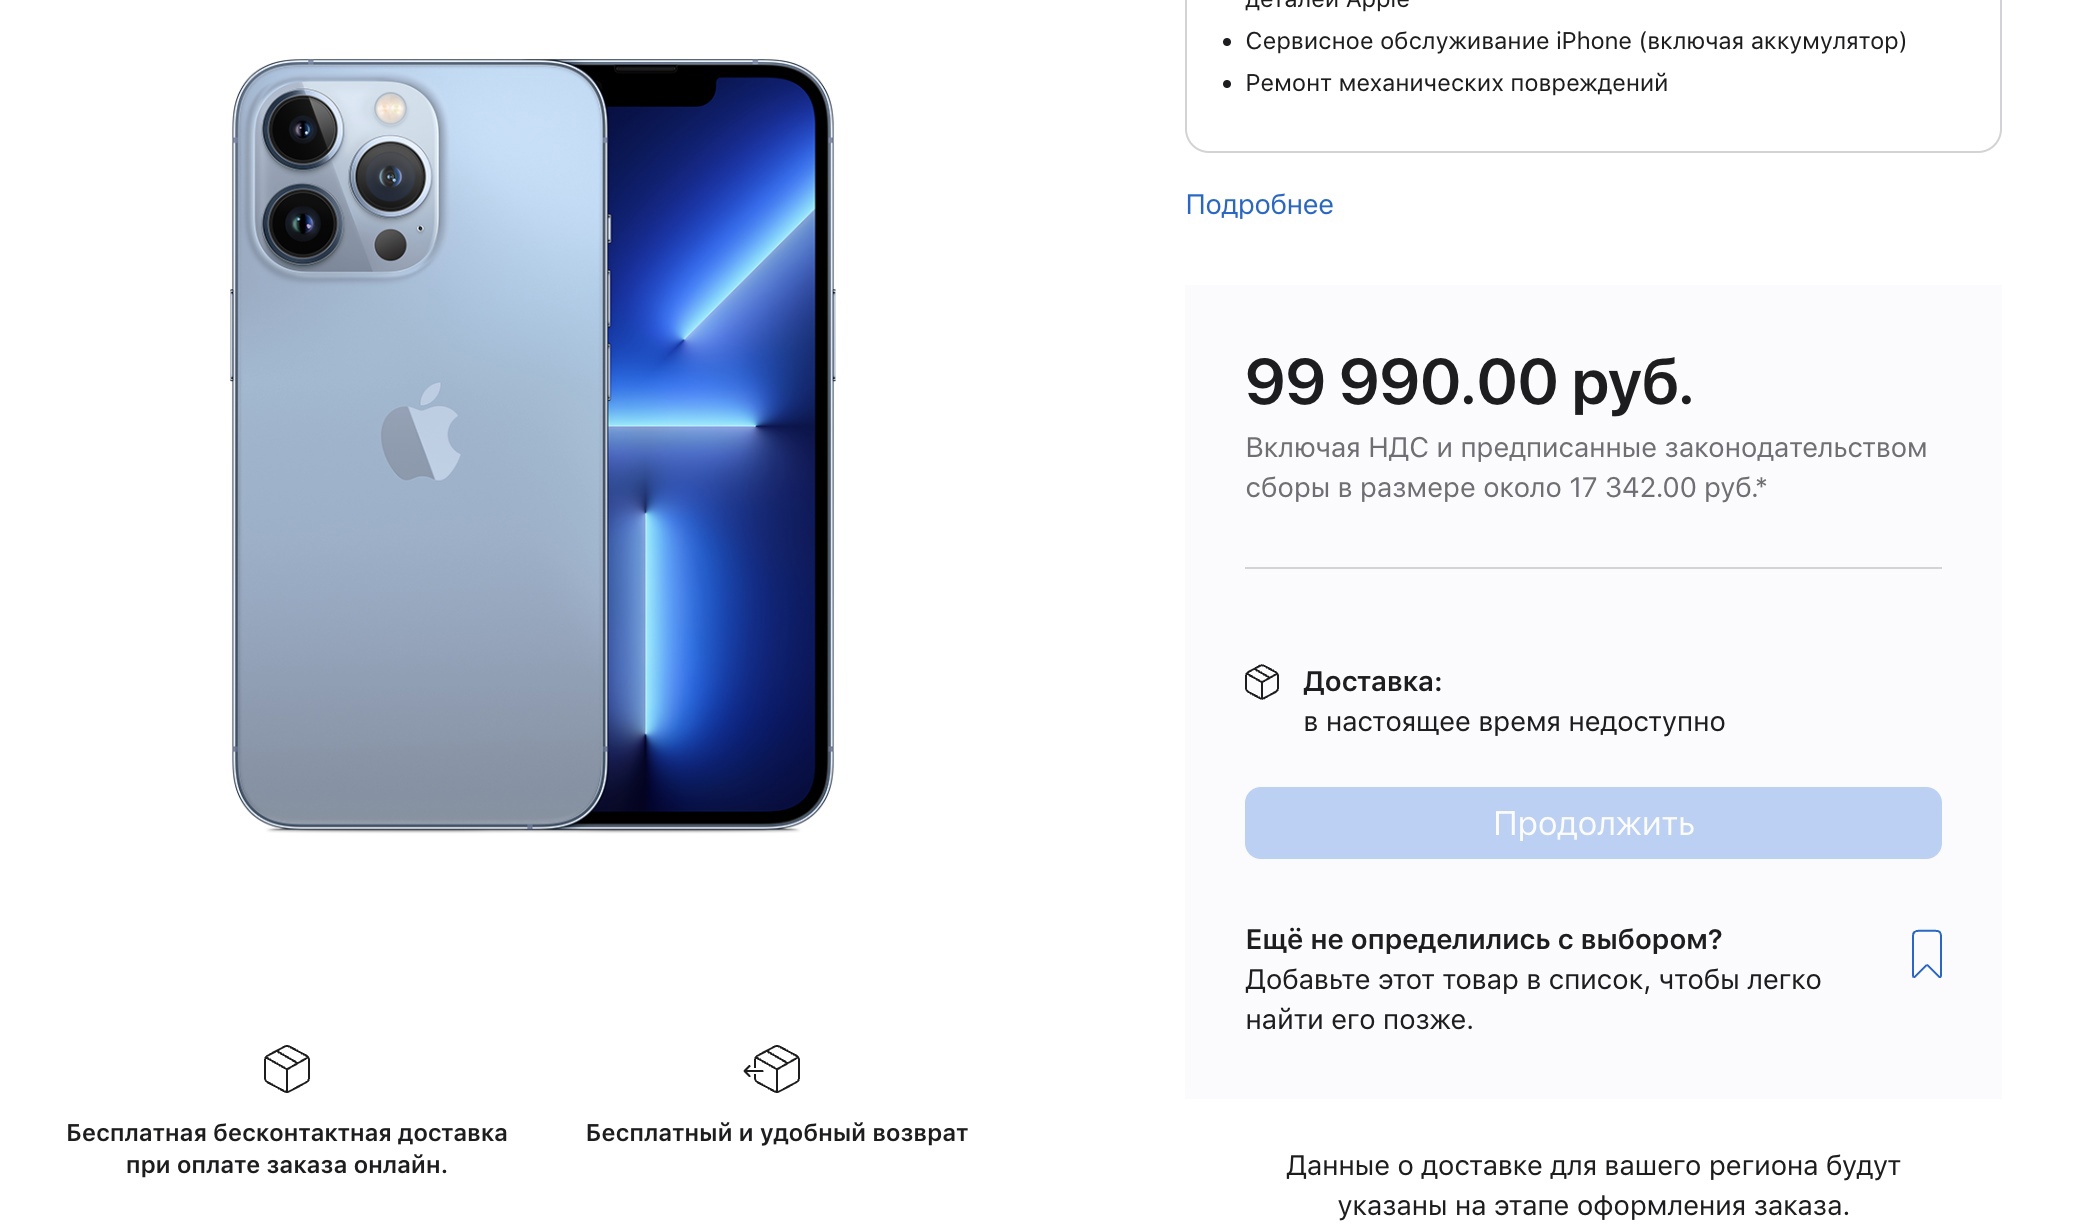 67401 Apple перестали продавать продукцию в России - iPhone и Macbook нельзя купить